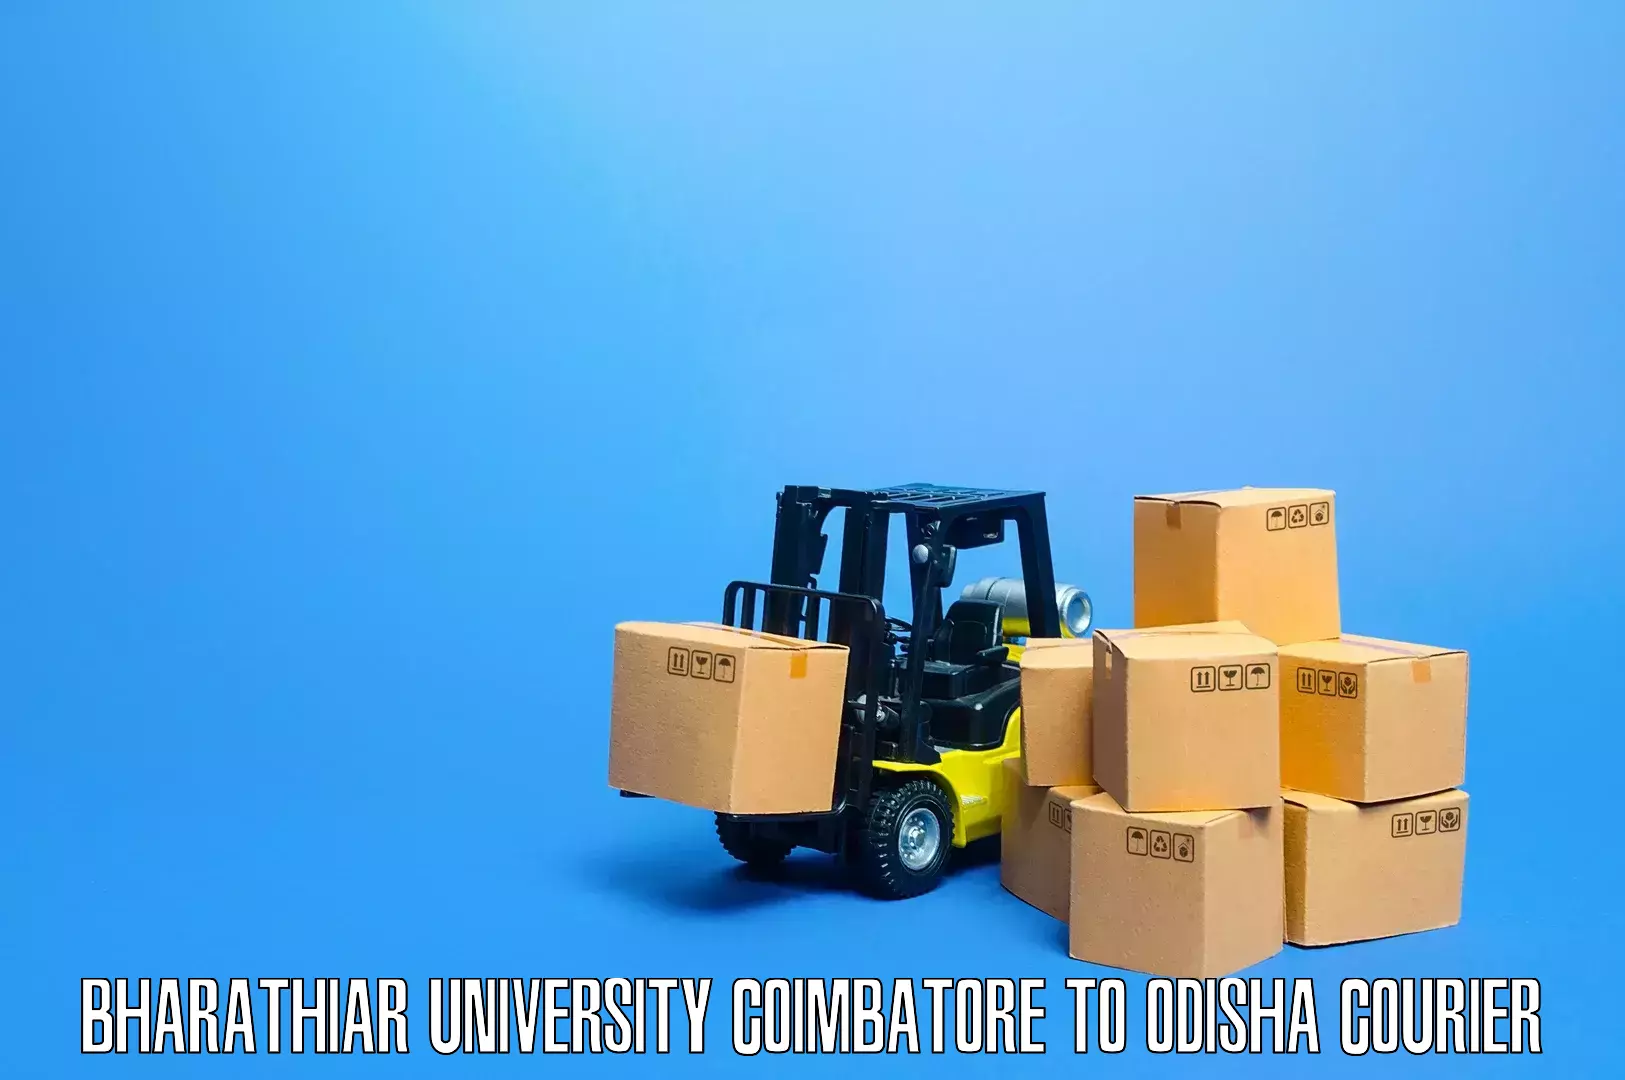 Furniture transport professionals Bharathiar University Coimbatore to Aul